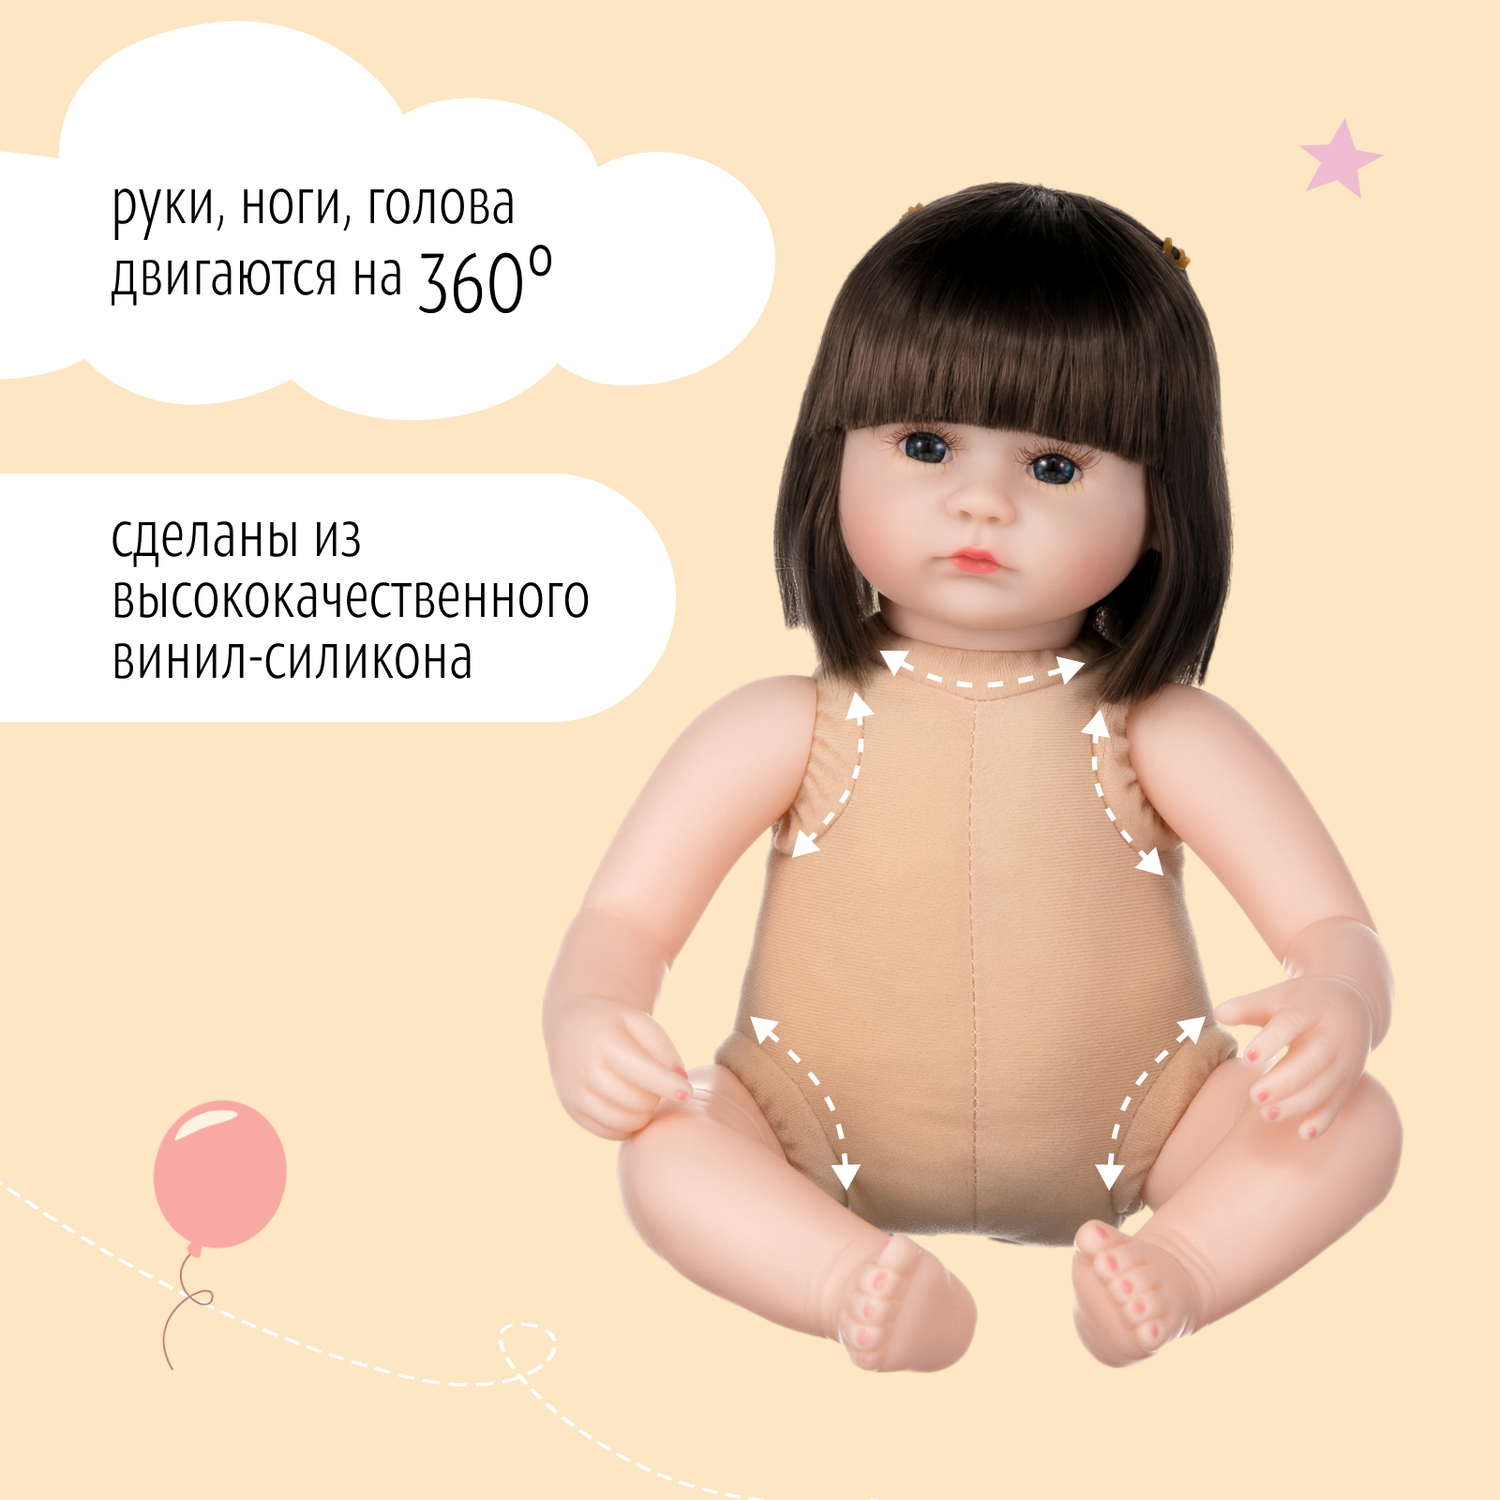 Кукла Реборн QA BABY Василиса девочка большая пупс набор игрушки для девочки 42 см 45006 - фото 10